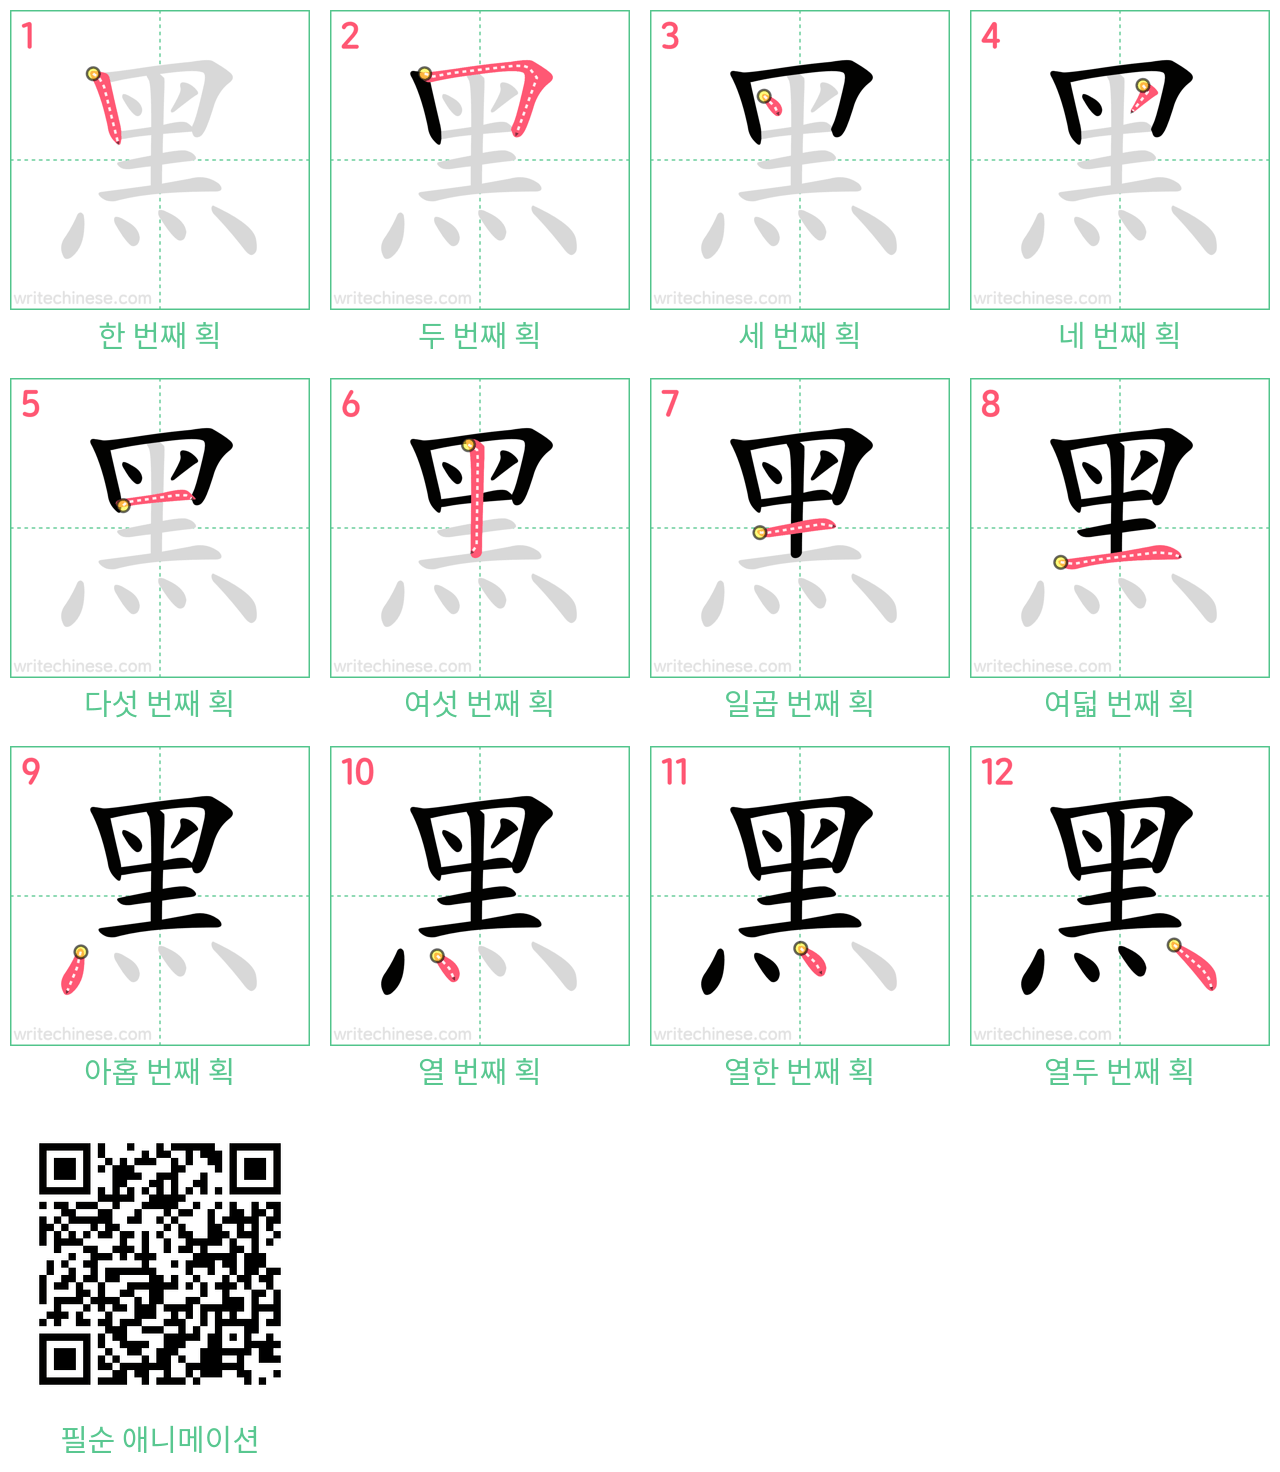 黑 step-by-step stroke order diagrams